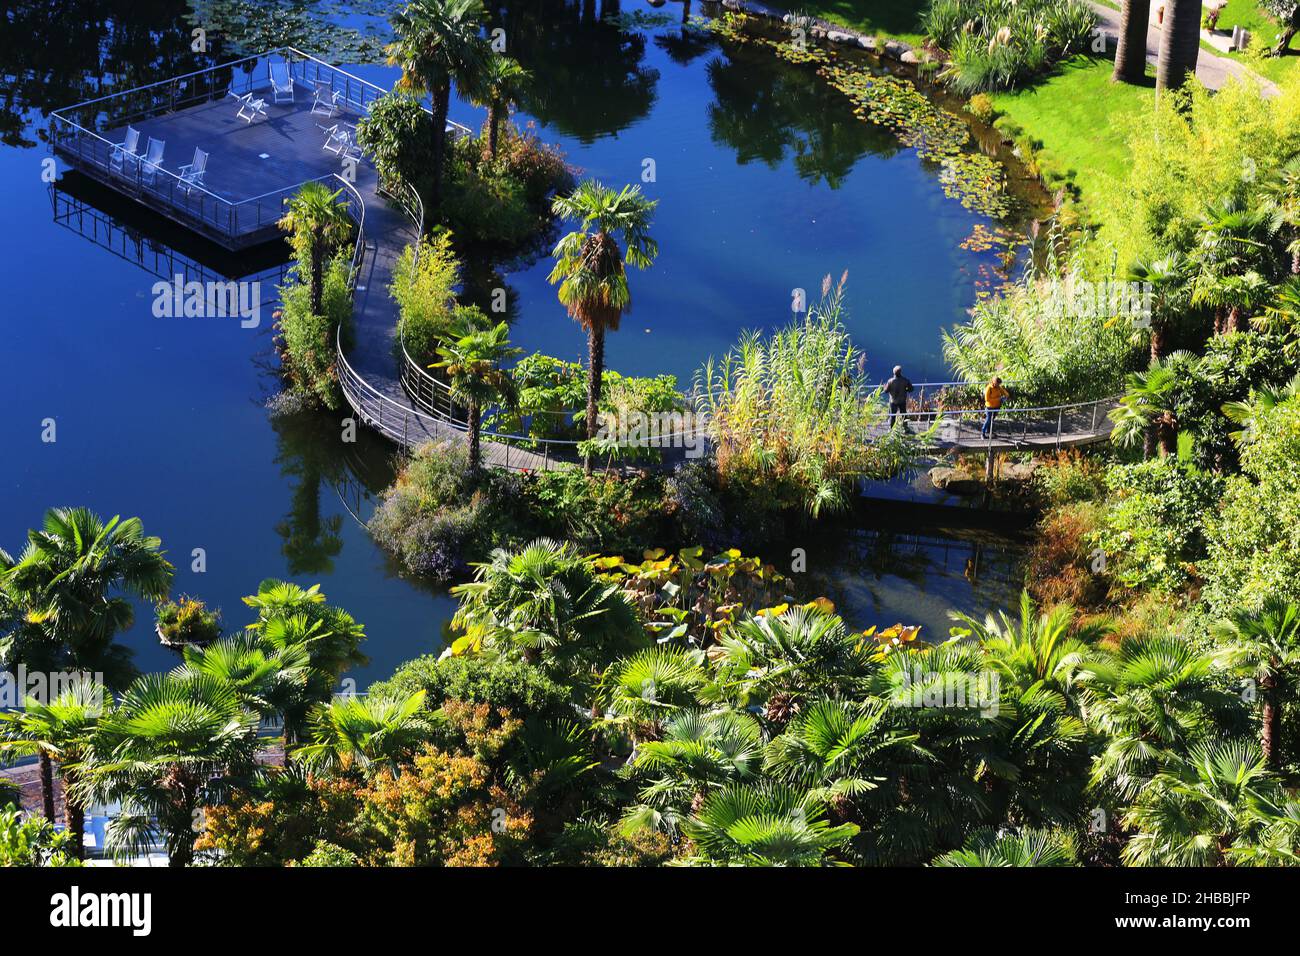 Meran, die Gärten von Schloss Trauttmansdorff  eröffnen beeindruckende Perspektiven auf exotische Gartenlandschaften, Südtirol, Dolomiten, Italien Stock Photo